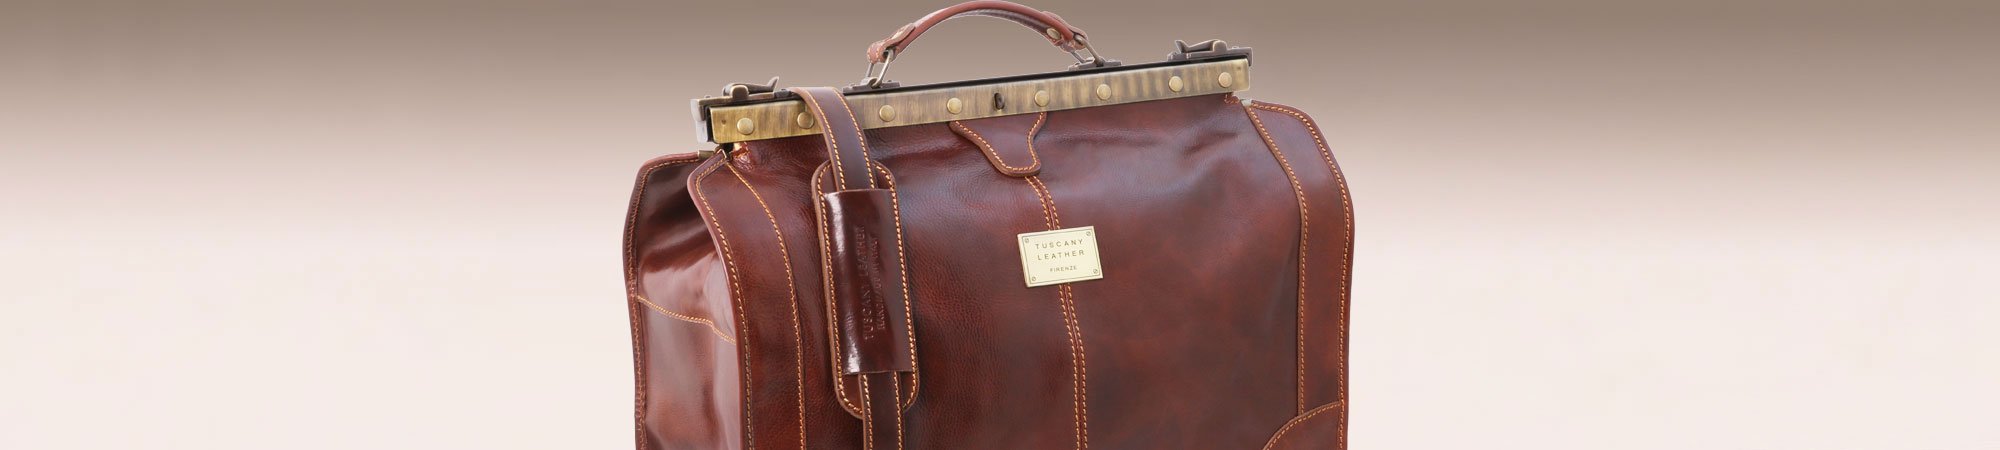  Tuscany Leather Madrid Gladstone Leather Bag - Large